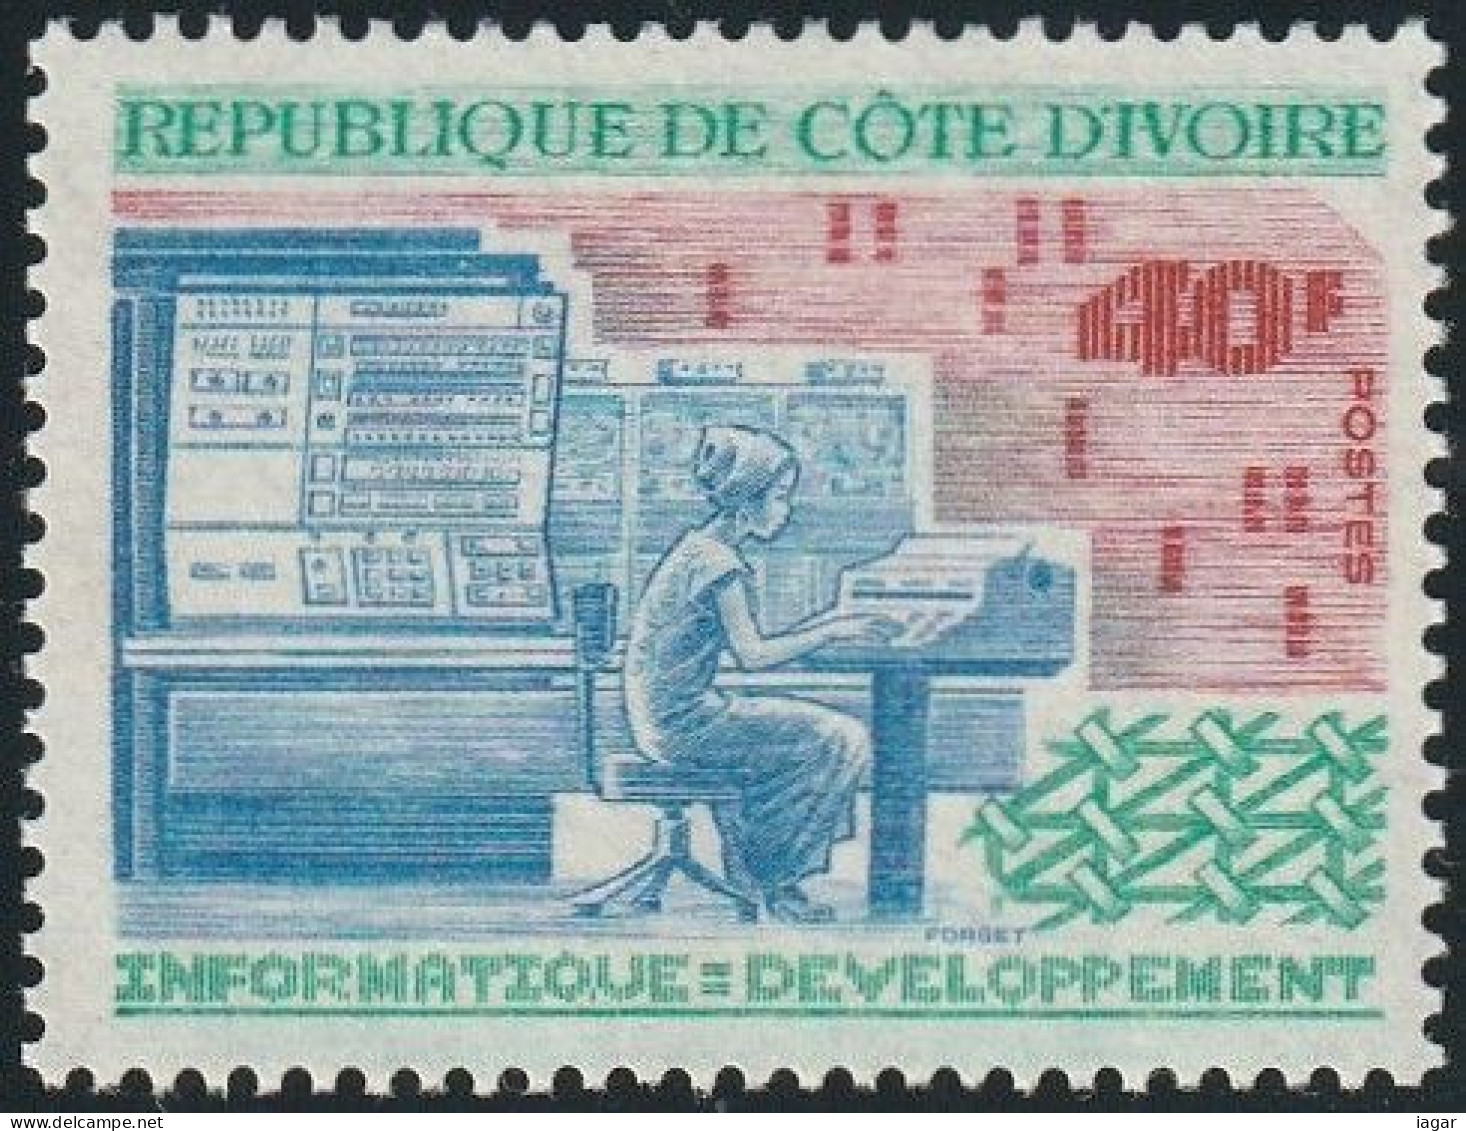 THEMATIC SCIENCE: IT - DEVELOPMENT      -  COTE D'IVOIRE - Informatik